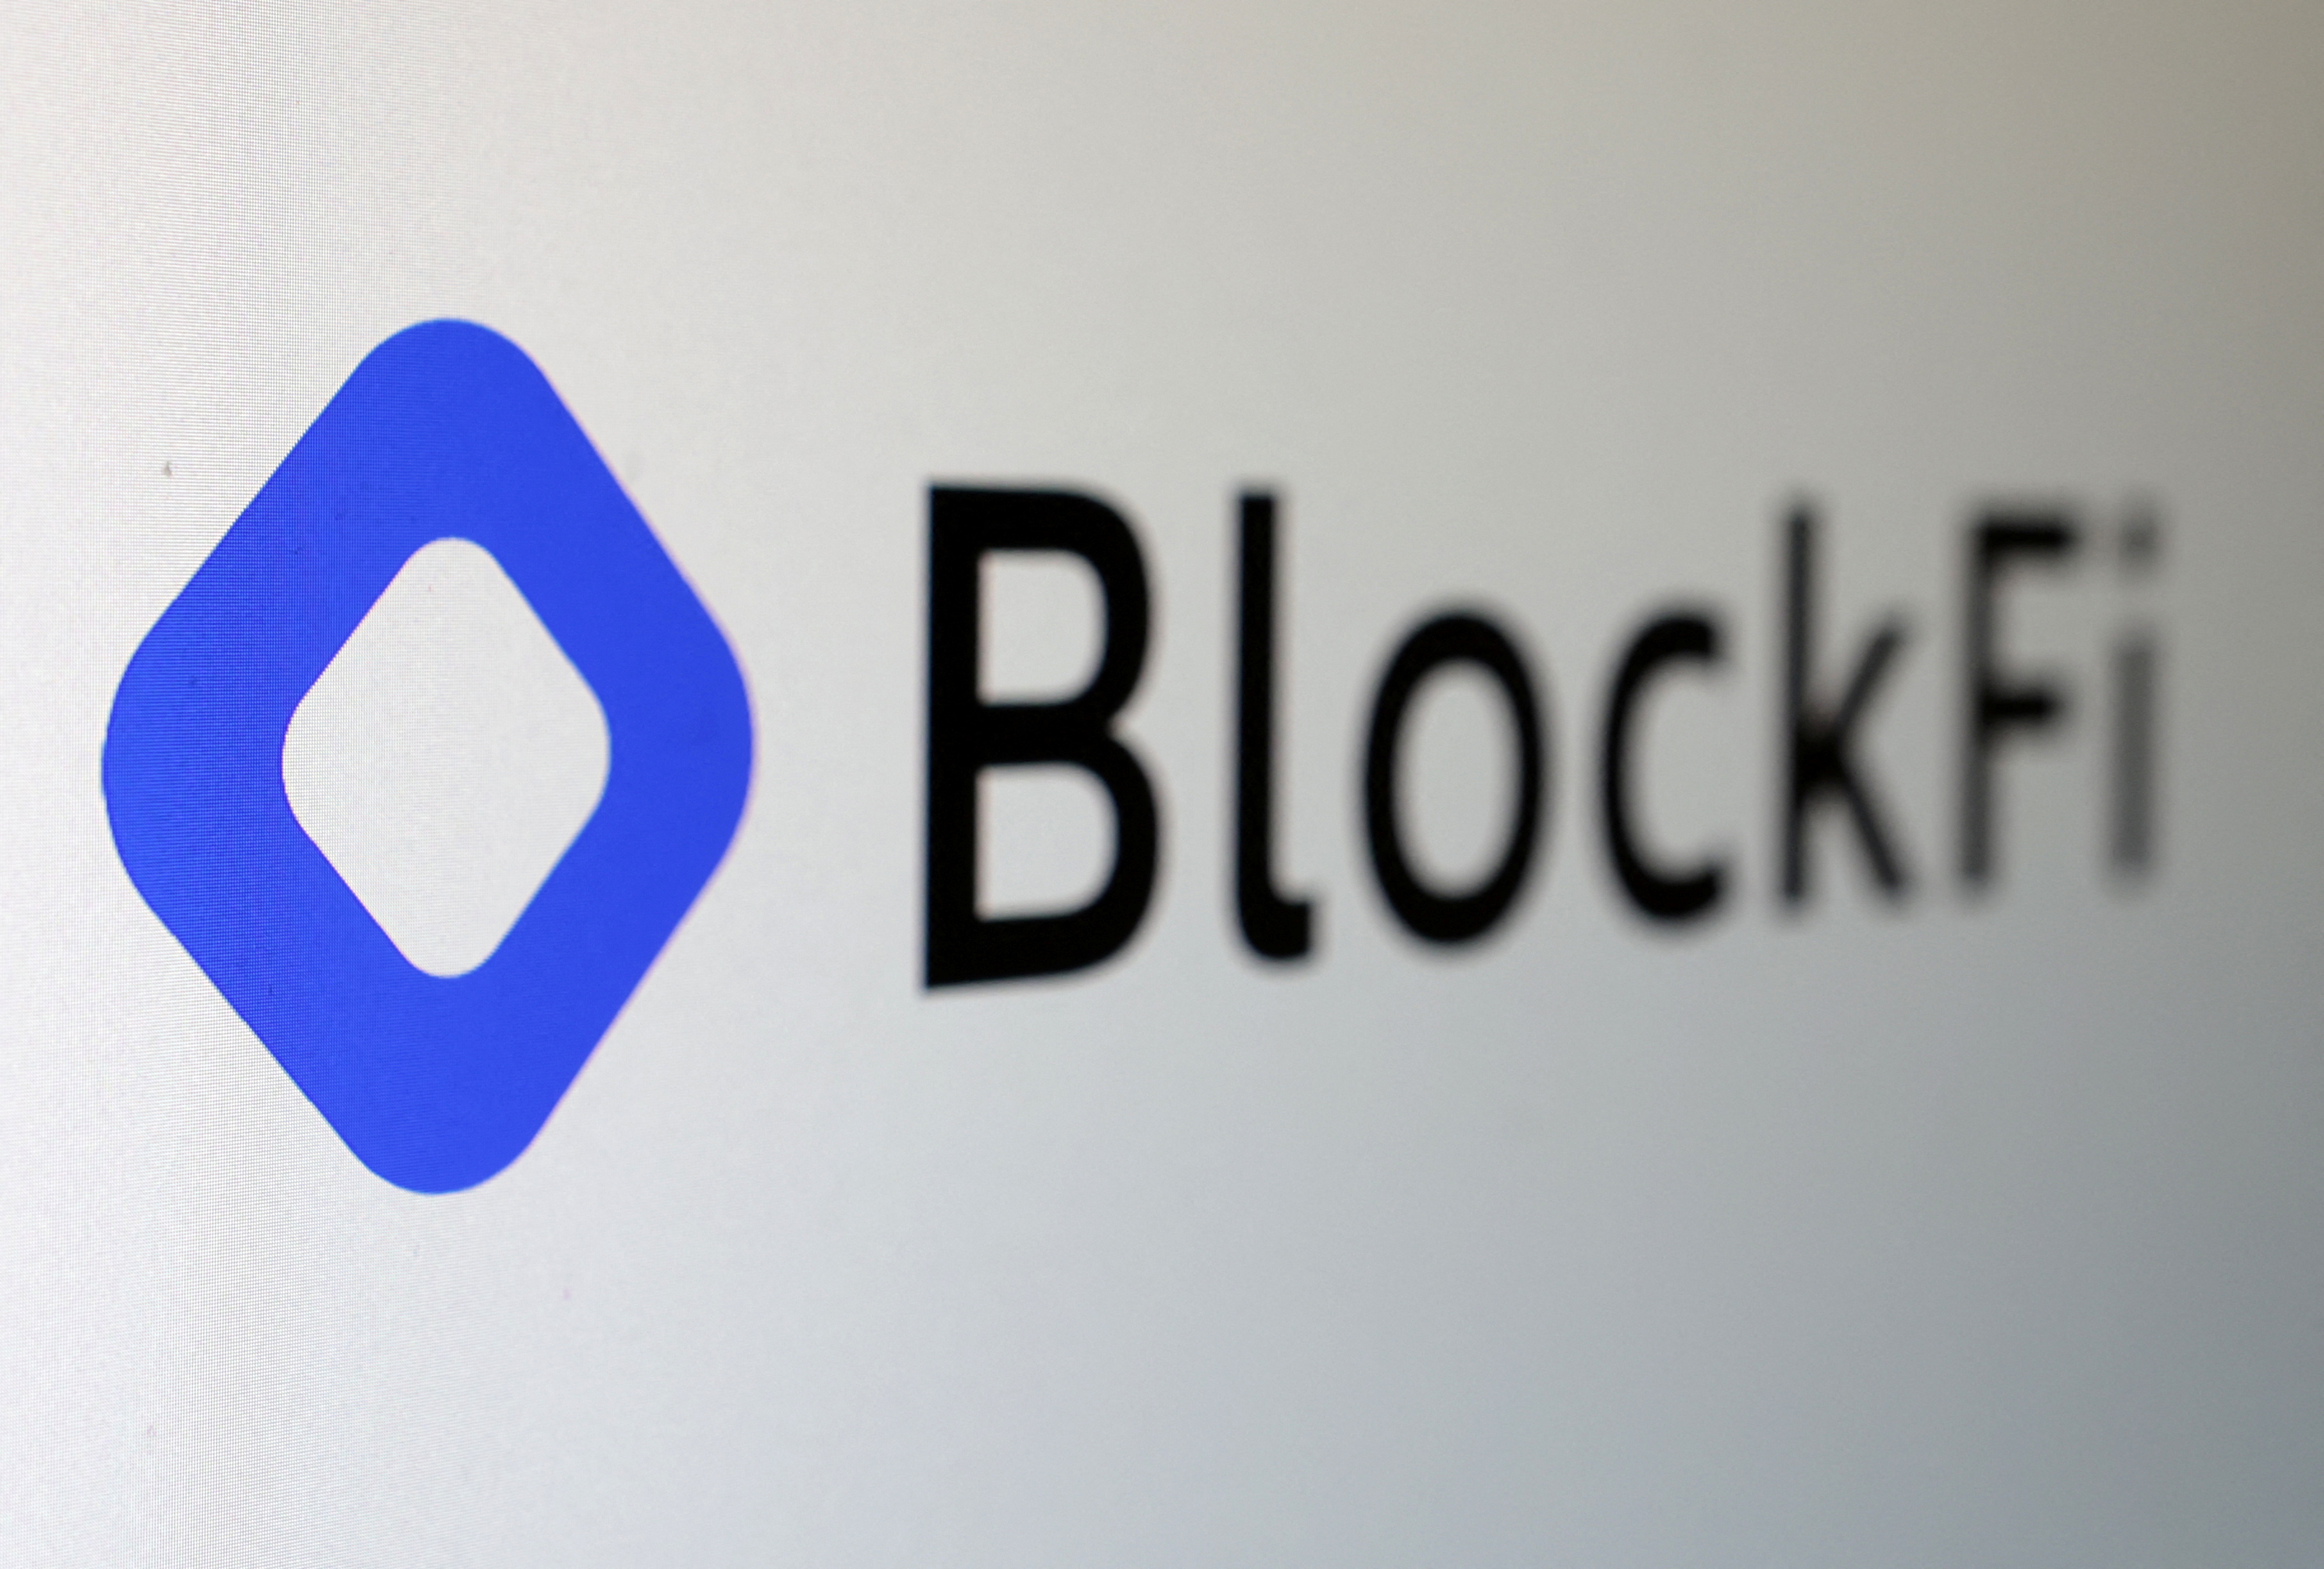 BlockFi executive on crypto sector